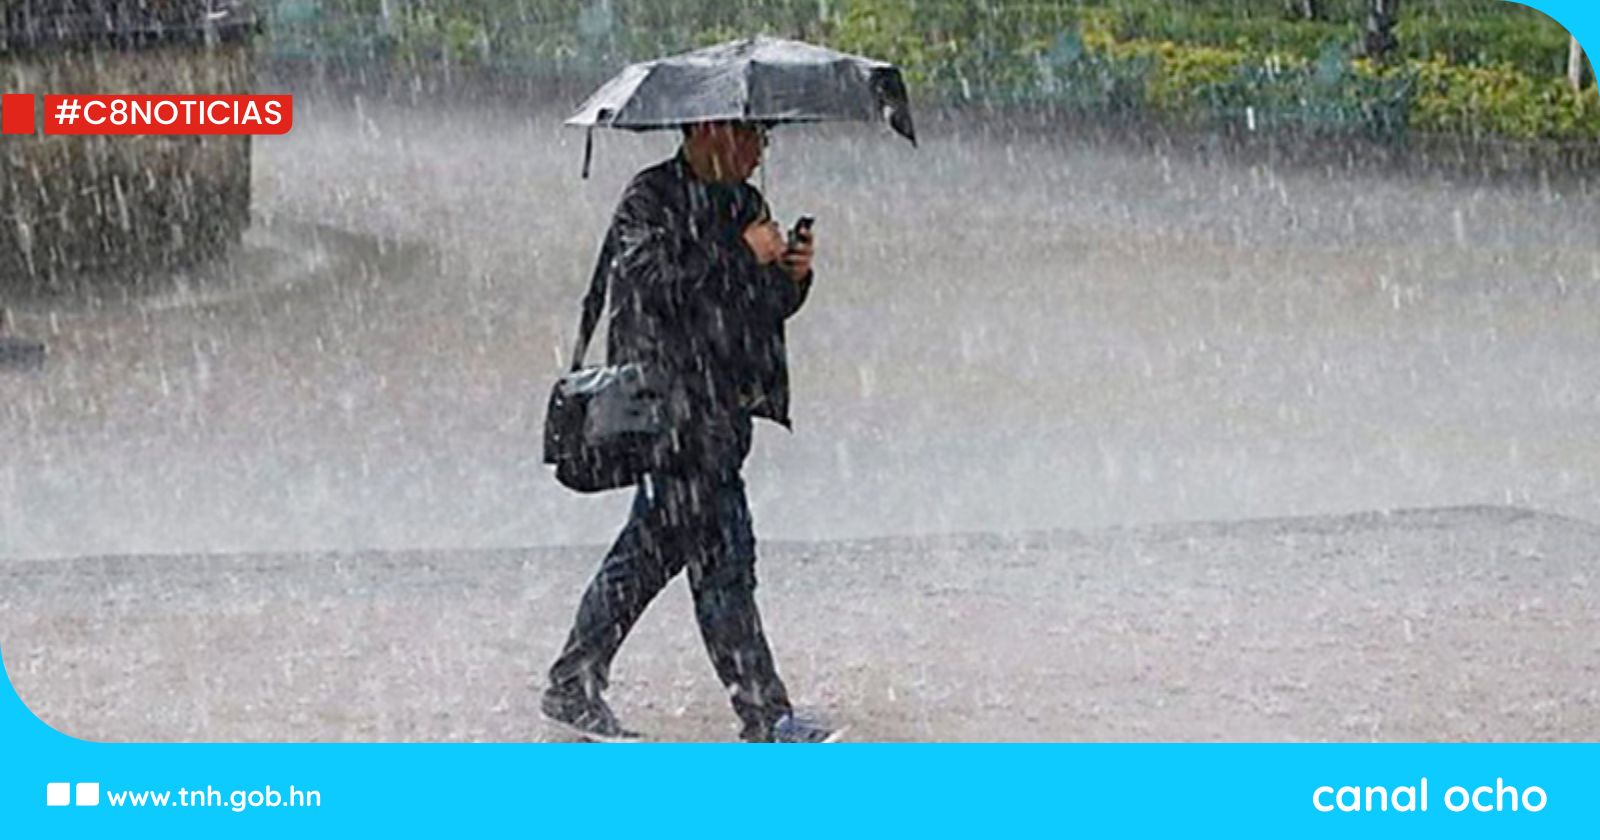 Copeco pronostica lluvias con tormentas eléctricas en la mayor parte del país